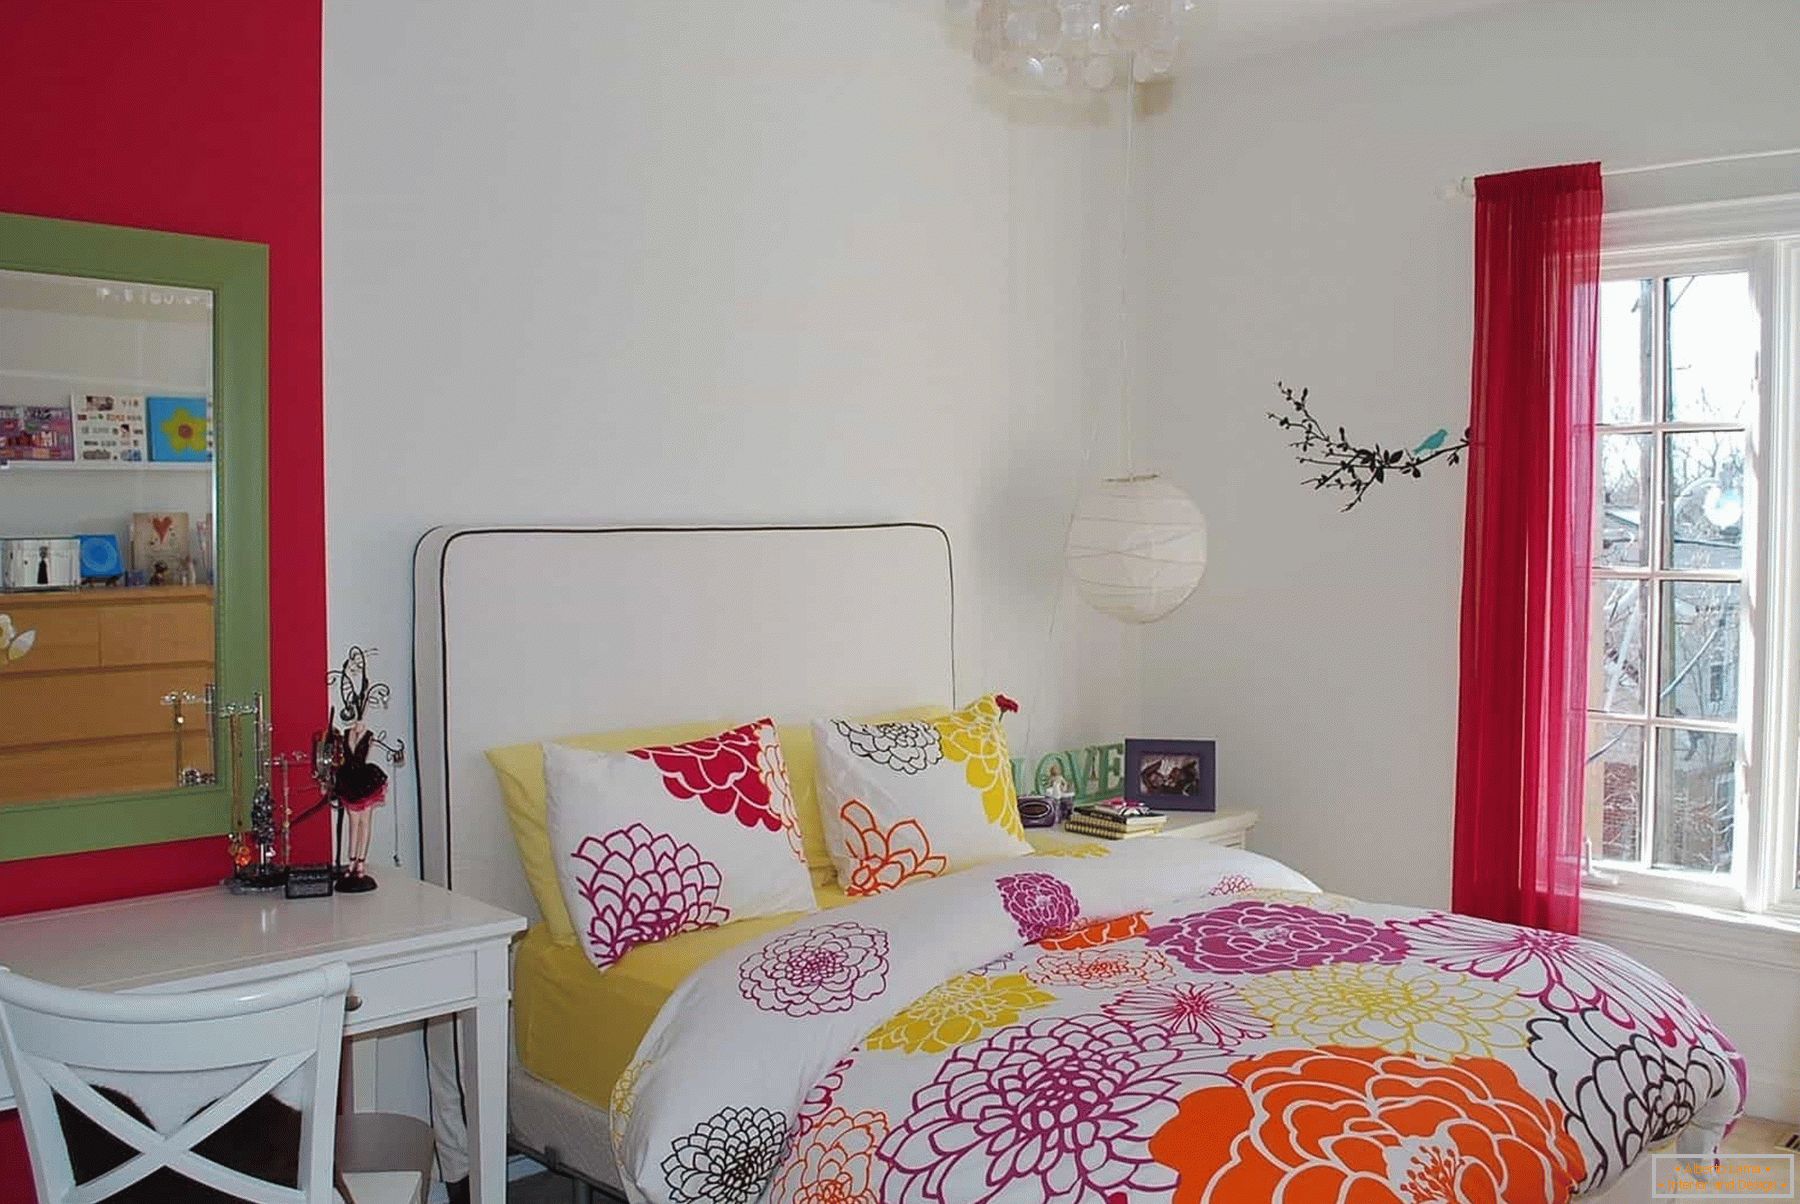 V beli sobi najstniškega dekleta - obarvanih postelj in dekor elementov